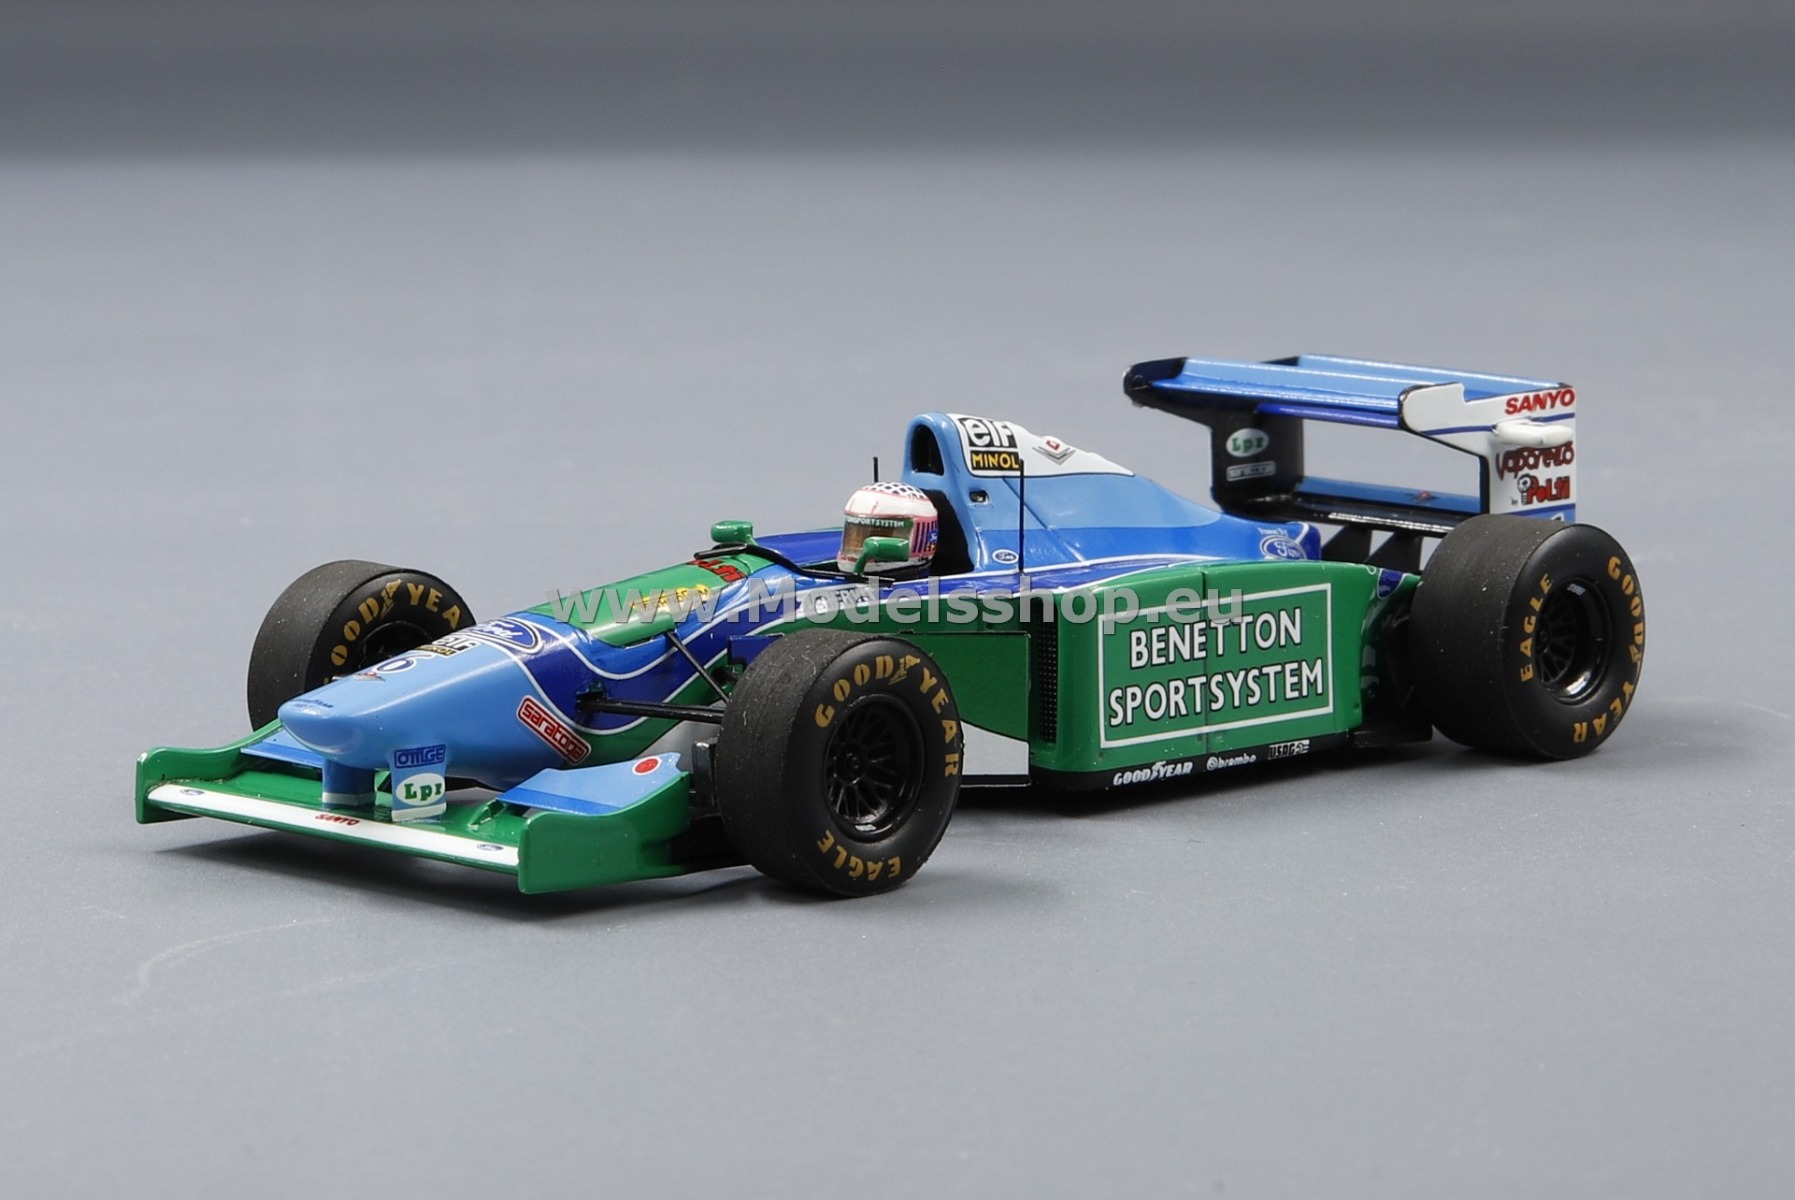 Benetton B194 Formula 1, No. 6 Monaco GP 1994, J.J. Lehto